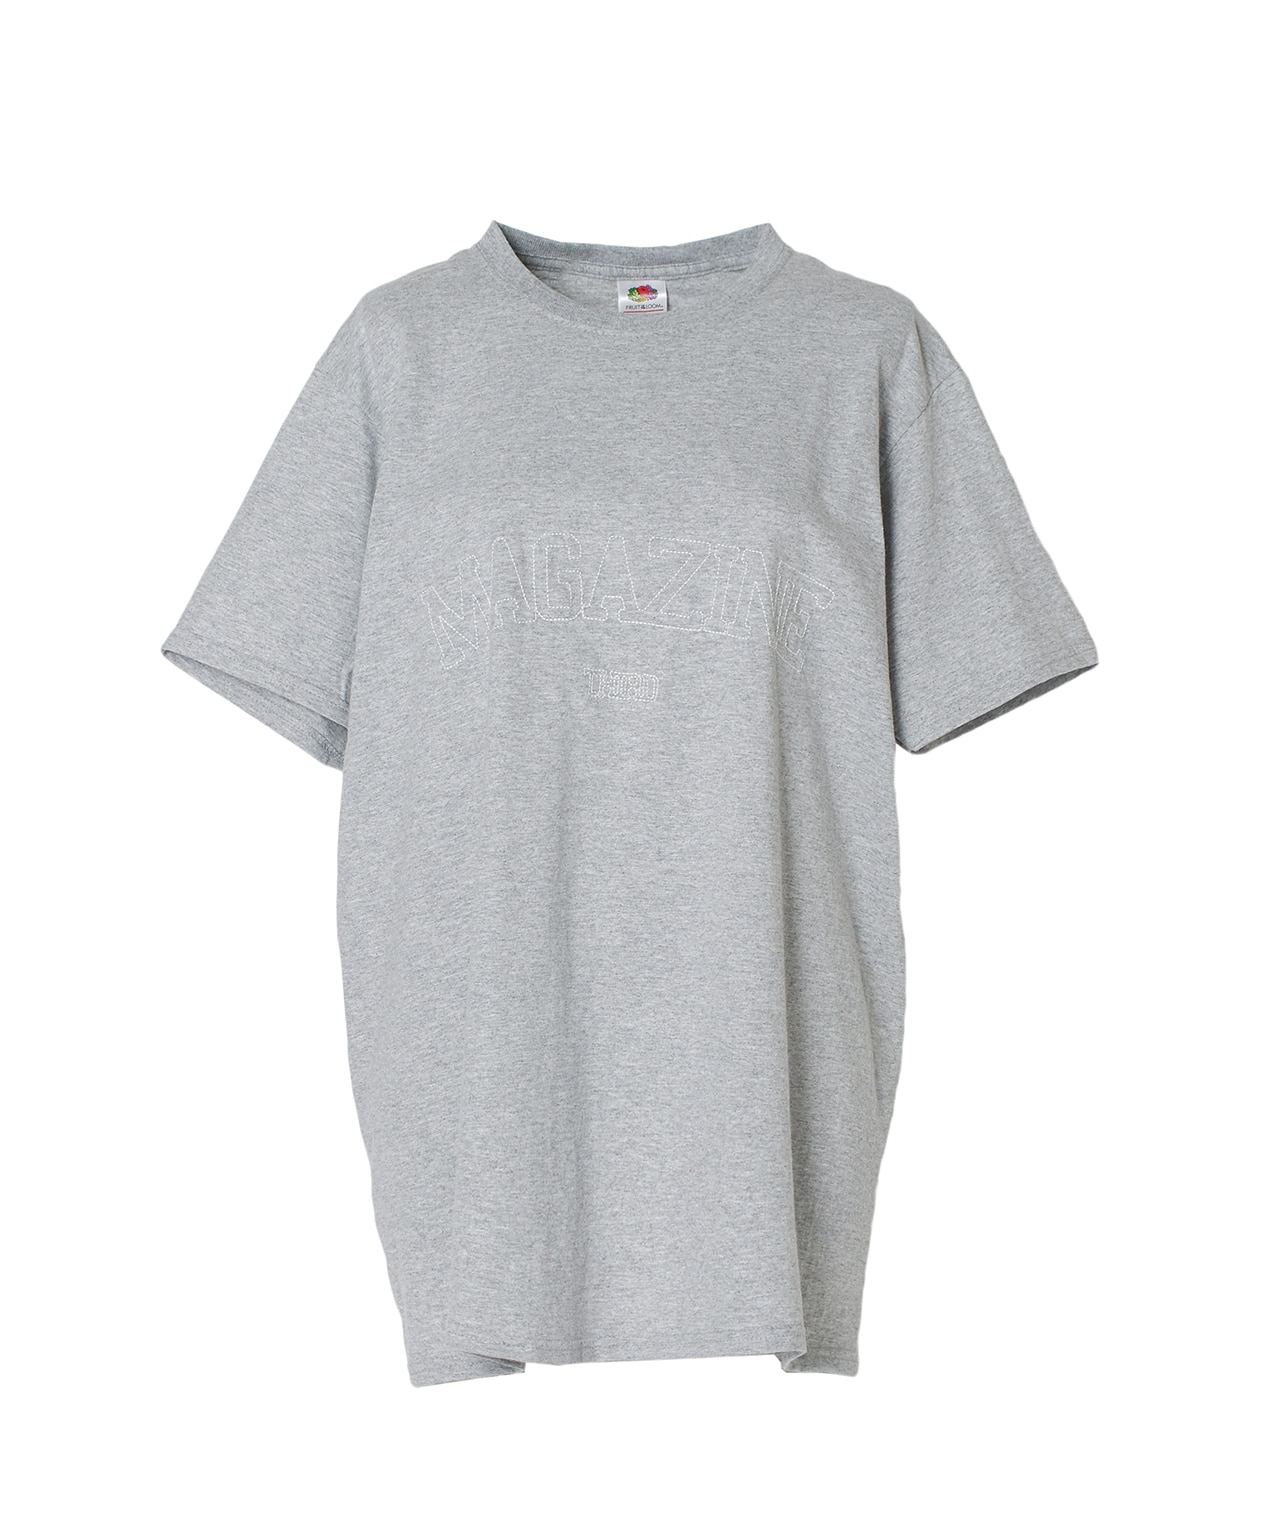 【別注】FRUIT OF THE LOOM/ビッグロゴ刺繍パックTシャツ 詳細画像 ホワイト/グレー 9